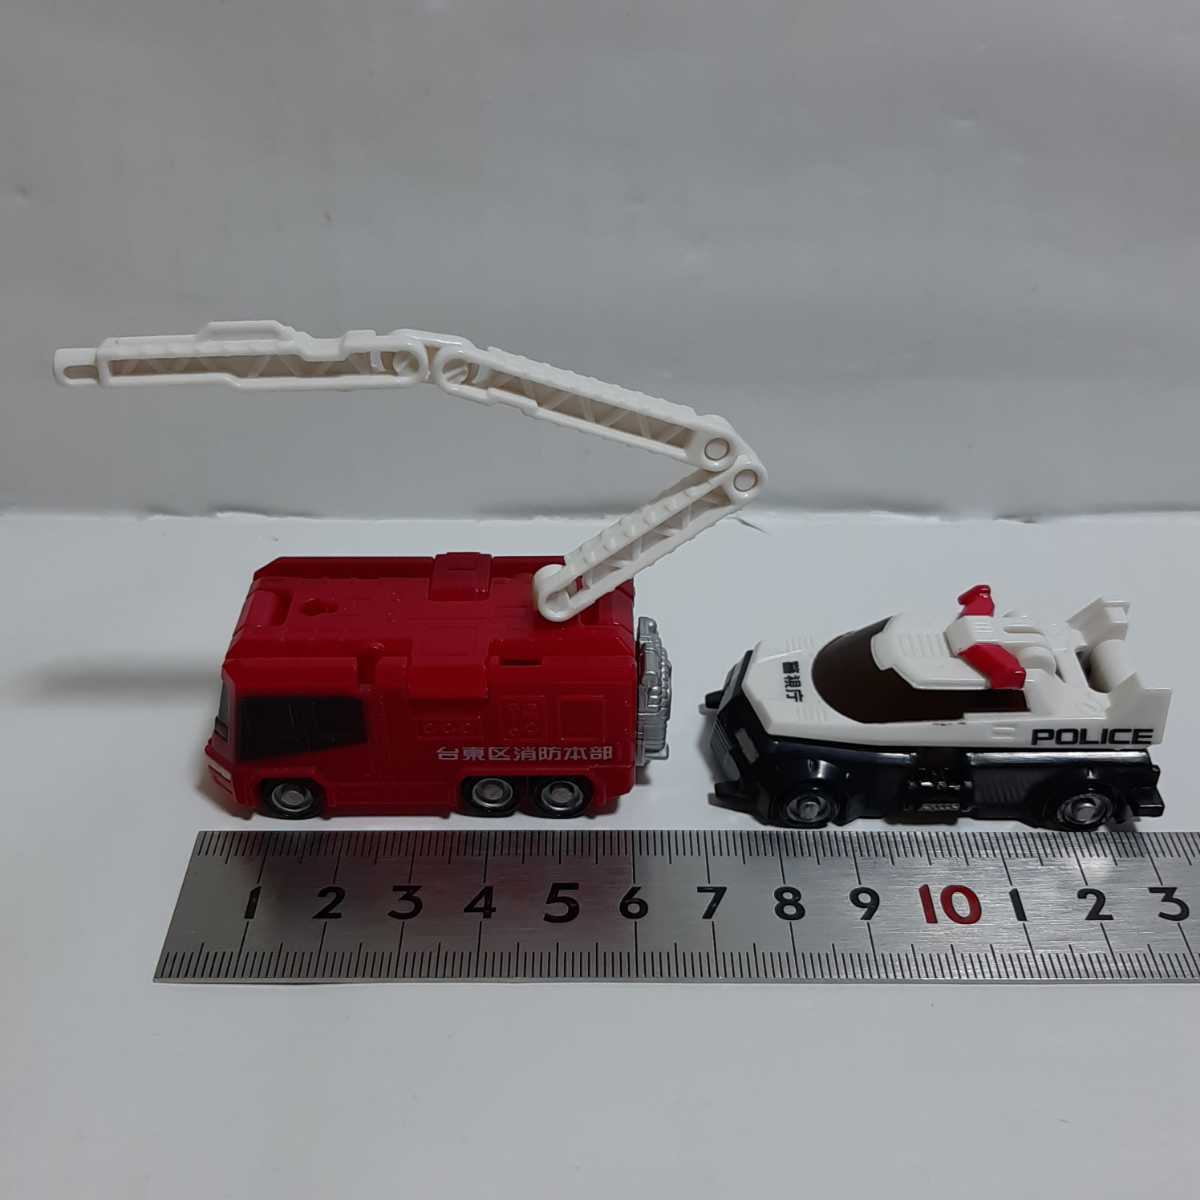 ズッカーン 変形 フィギュア パトカー 消防車 ミニカー おもちゃ 玩具 図鑑変形 JAPAN TOYS _画像2